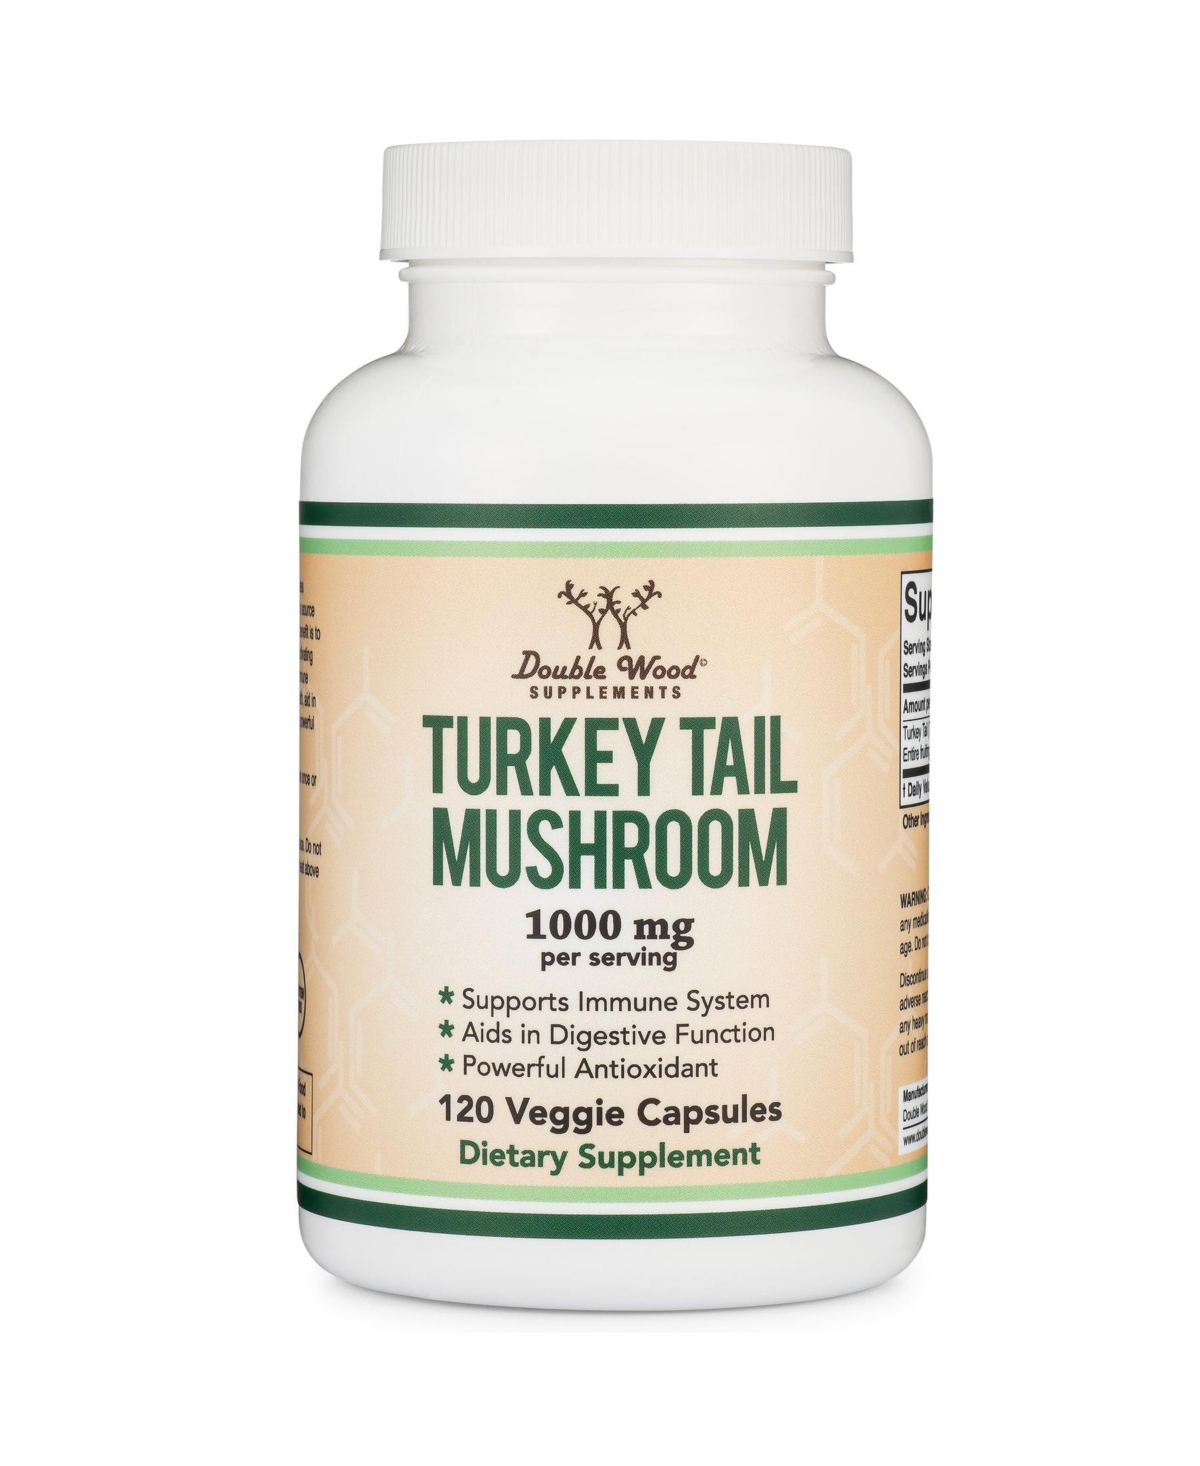 Turkey Tail Mushroom - 120 capsules, 1000 mg servings